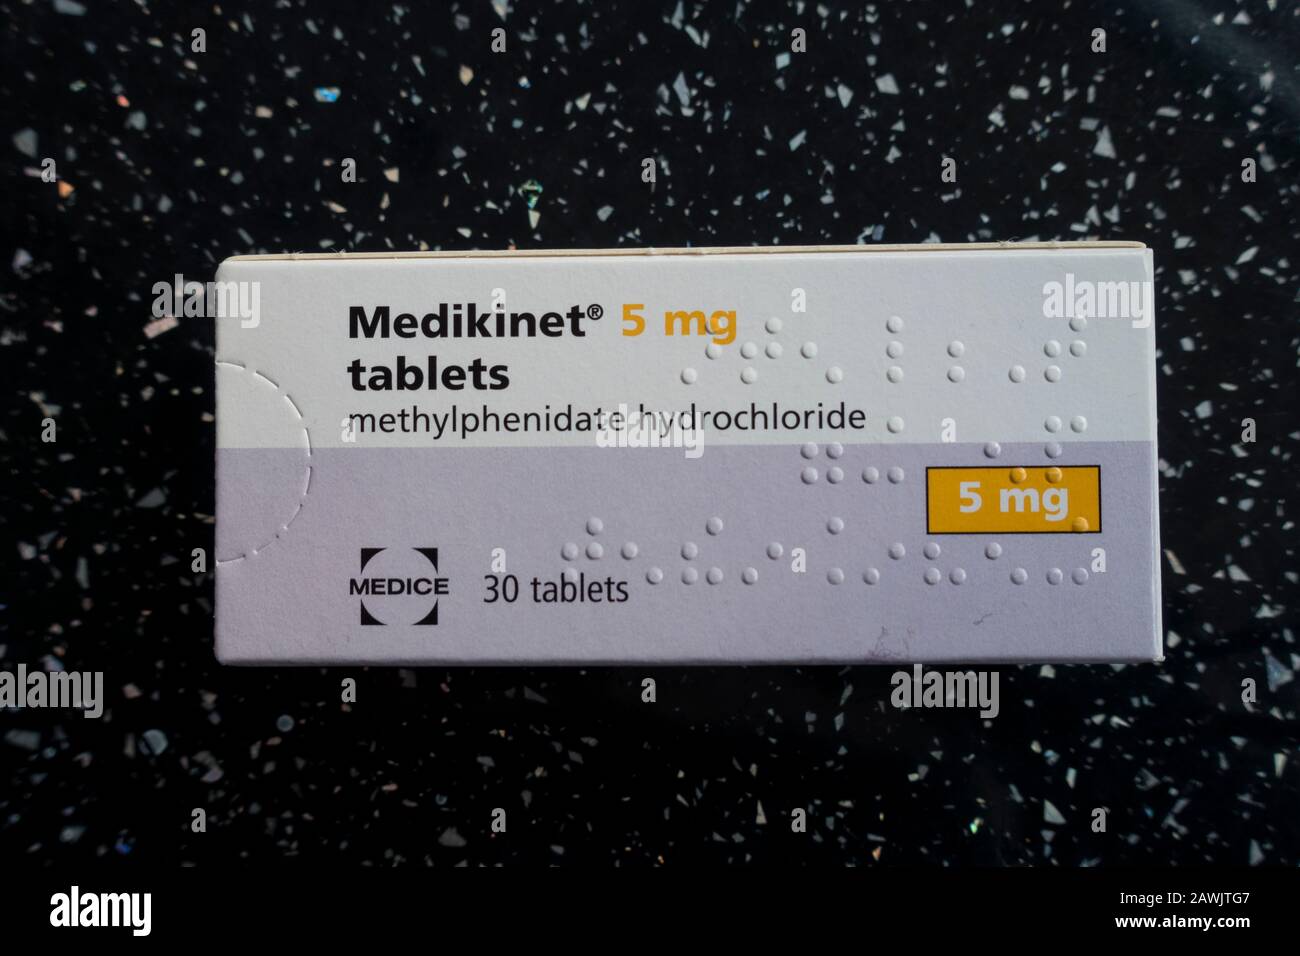 Medikinet, Methylphenidat Hydrochlorid ADHD Medikation, Großbritannien  Stockfotografie - Alamy